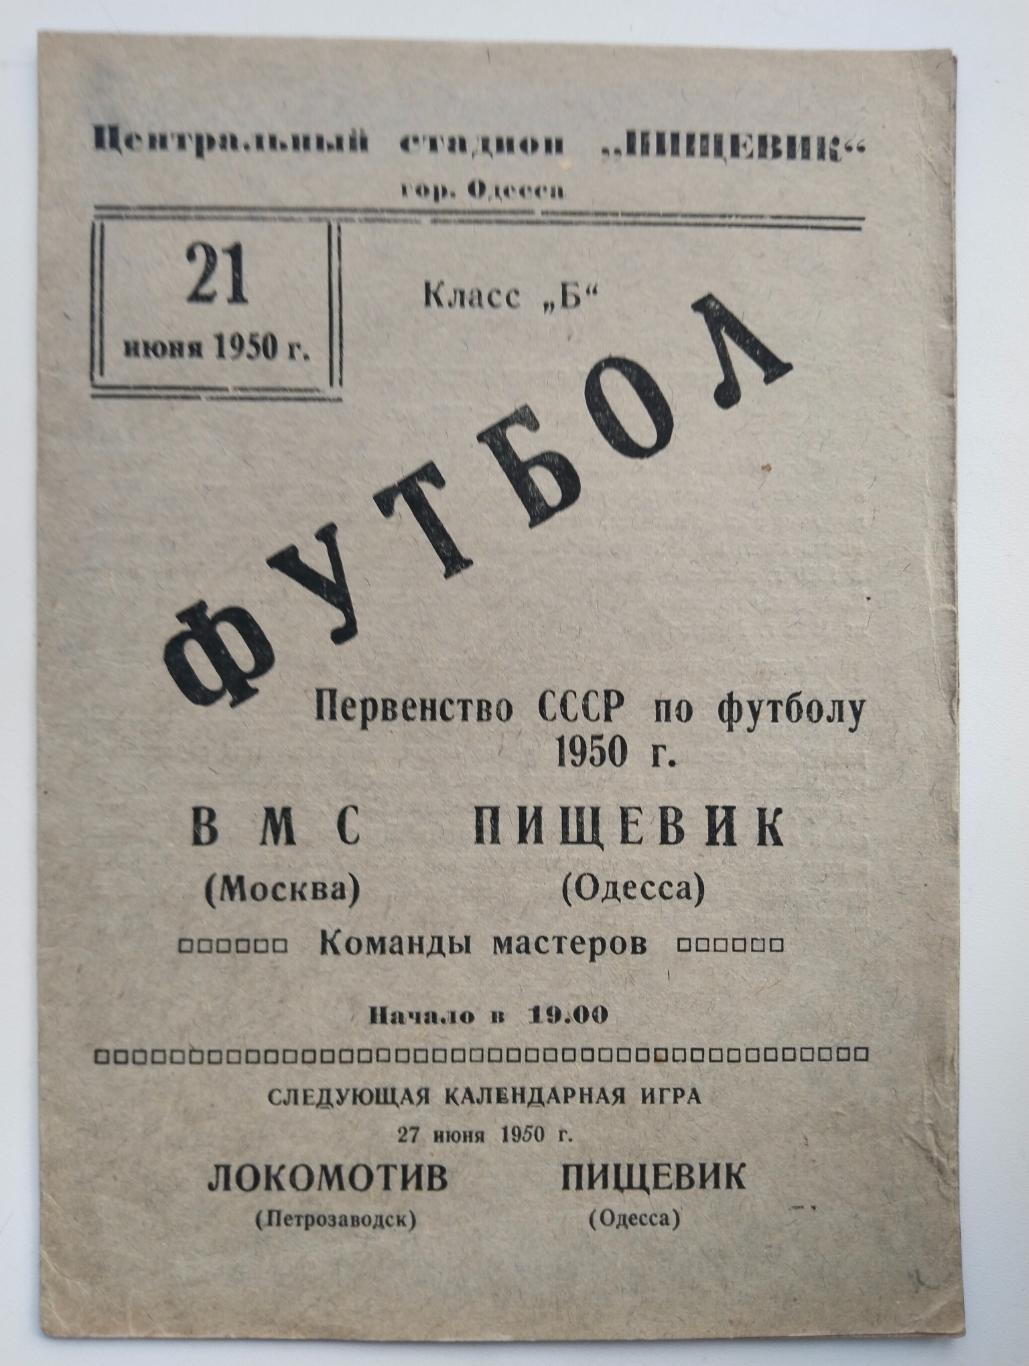 Пищевик Одесса - ВМС Москва 1950